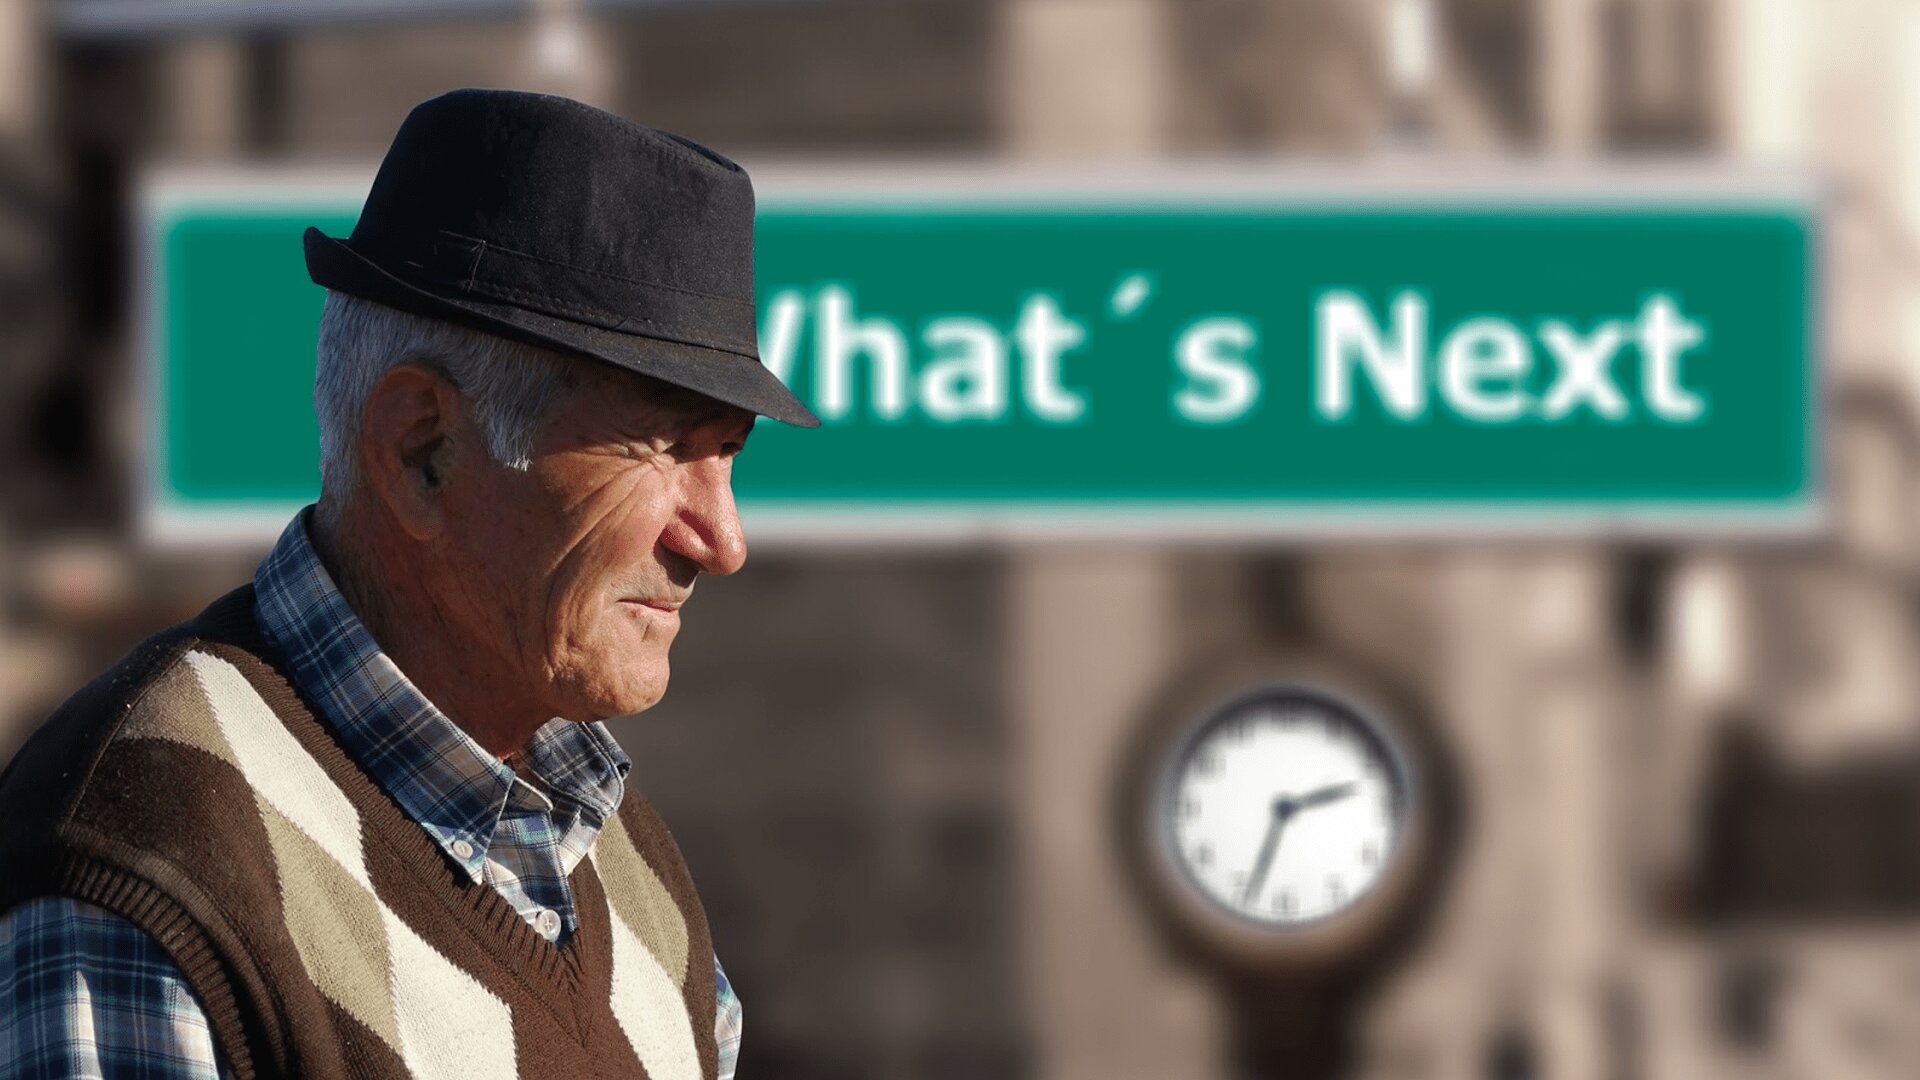 An elderly man wearing black hat